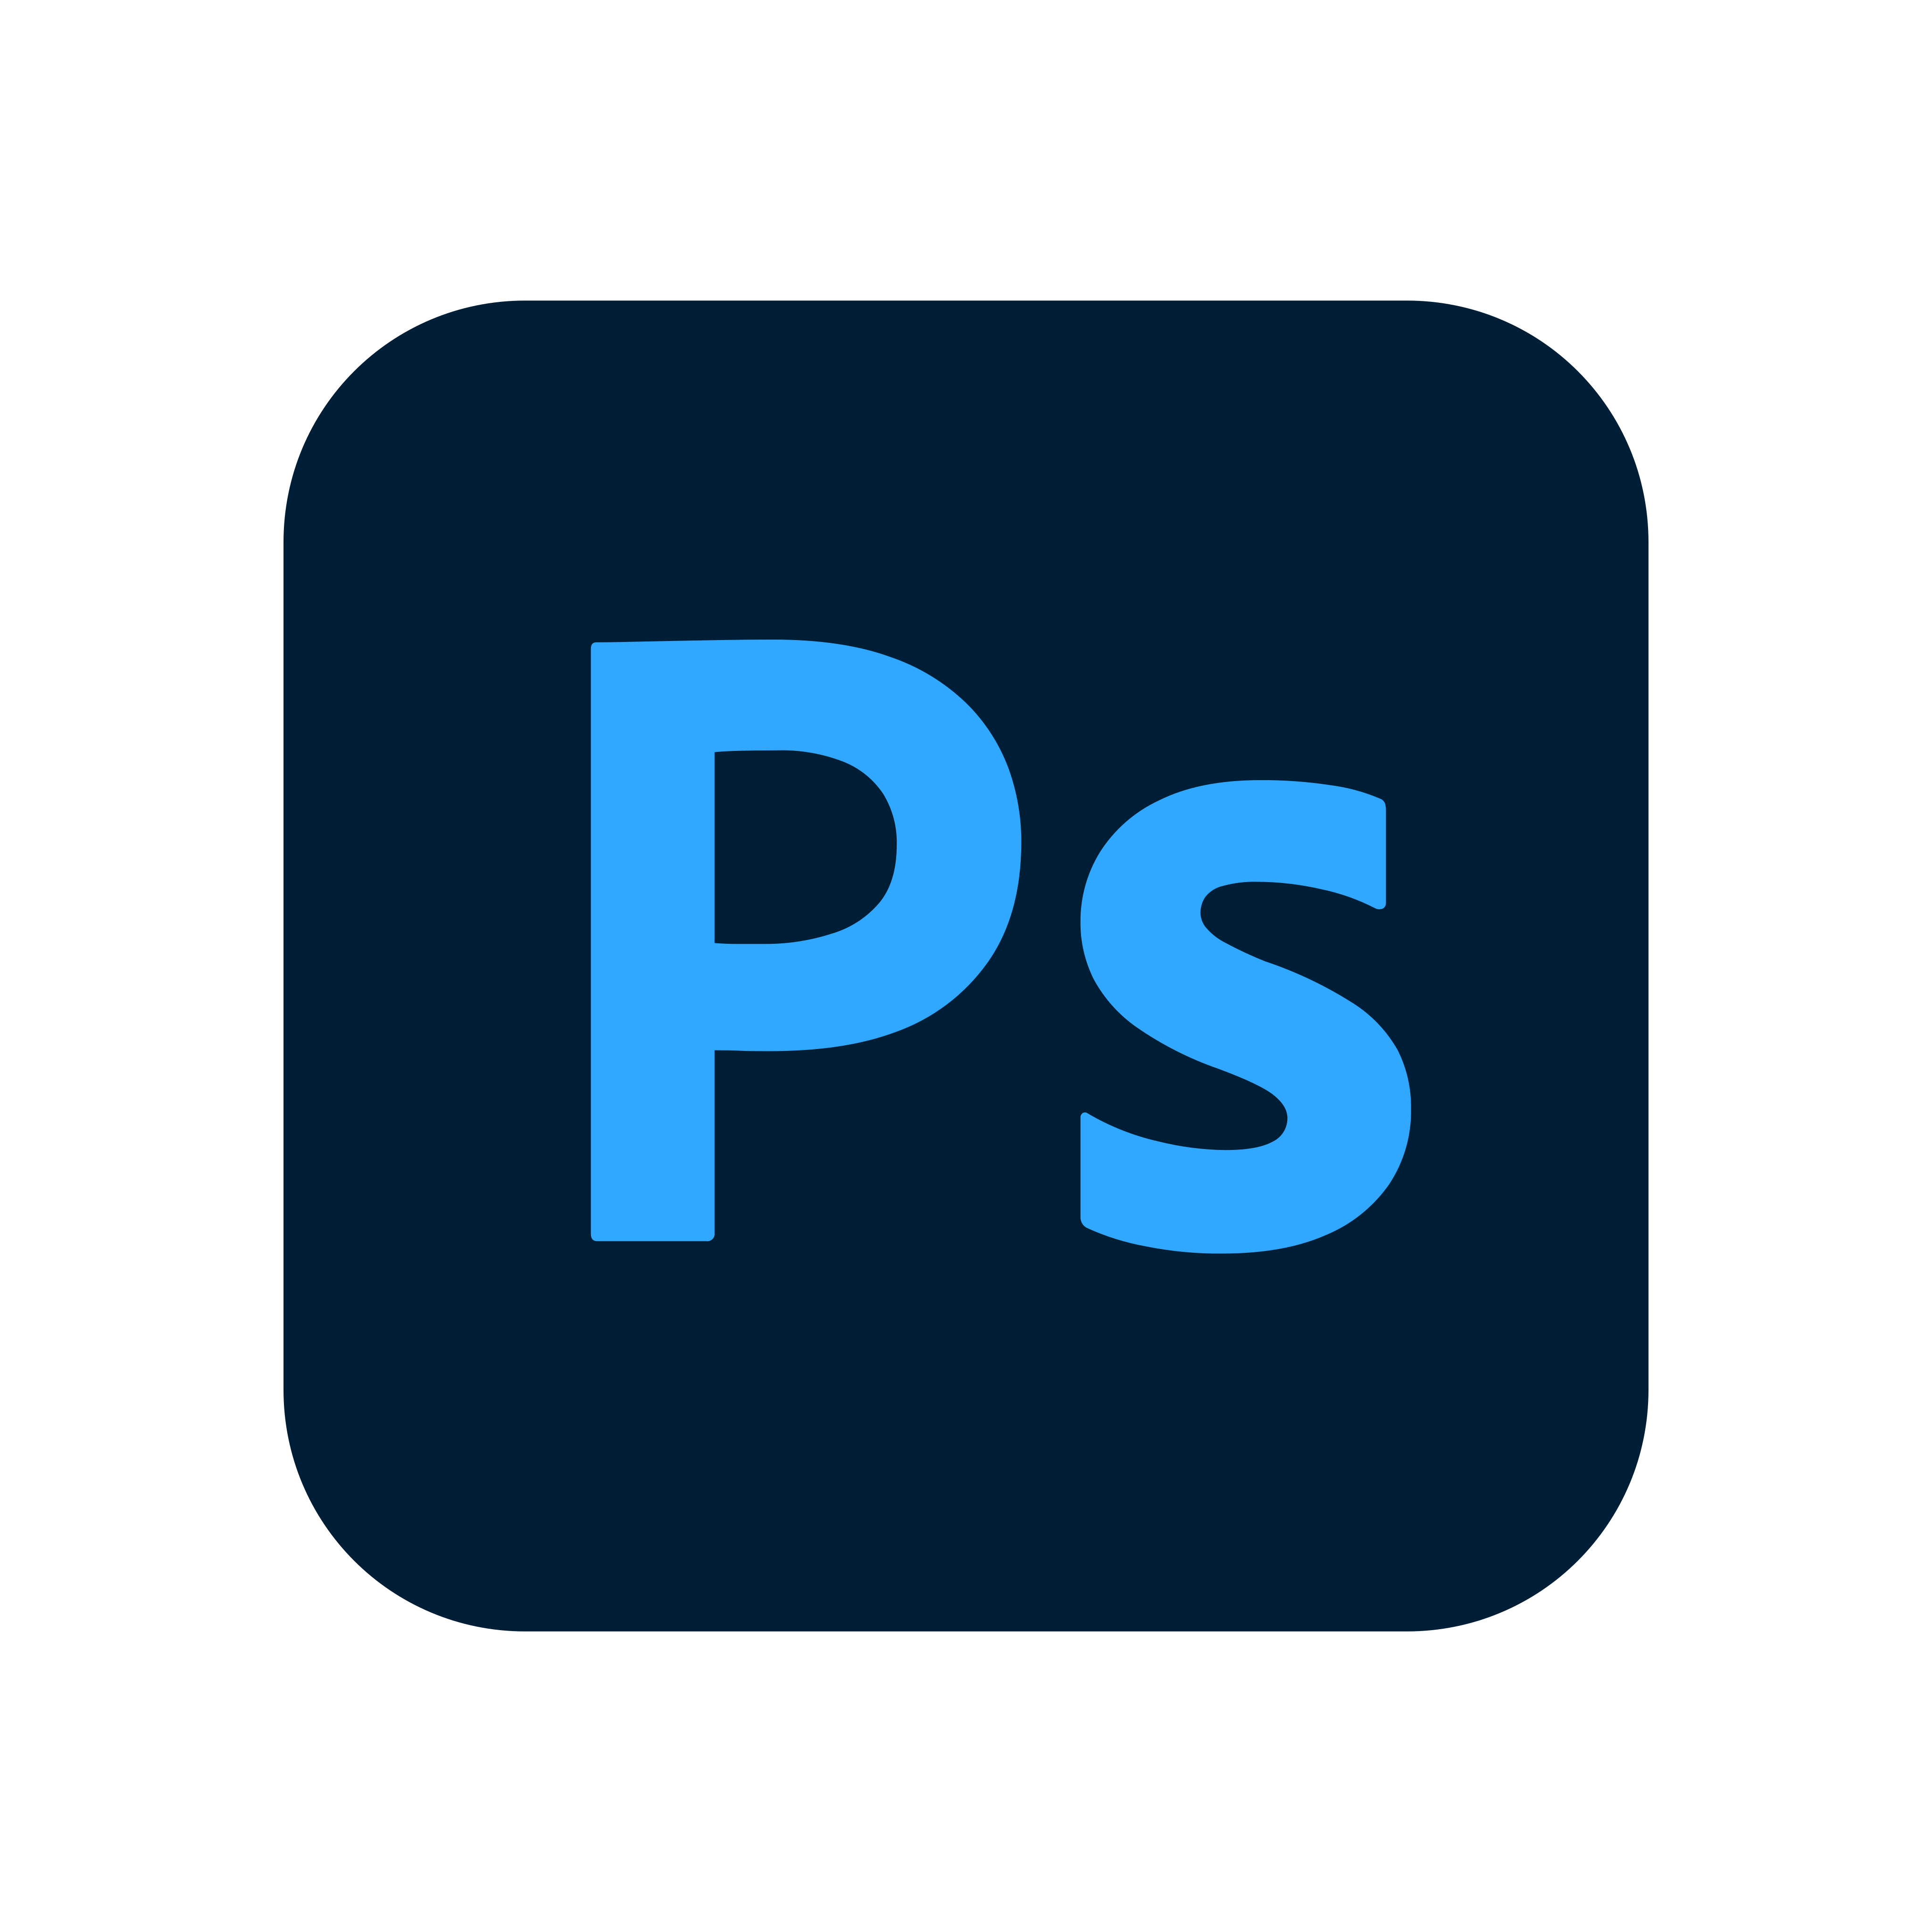 Adobe Photoshop Logo Png - KibrisPDR